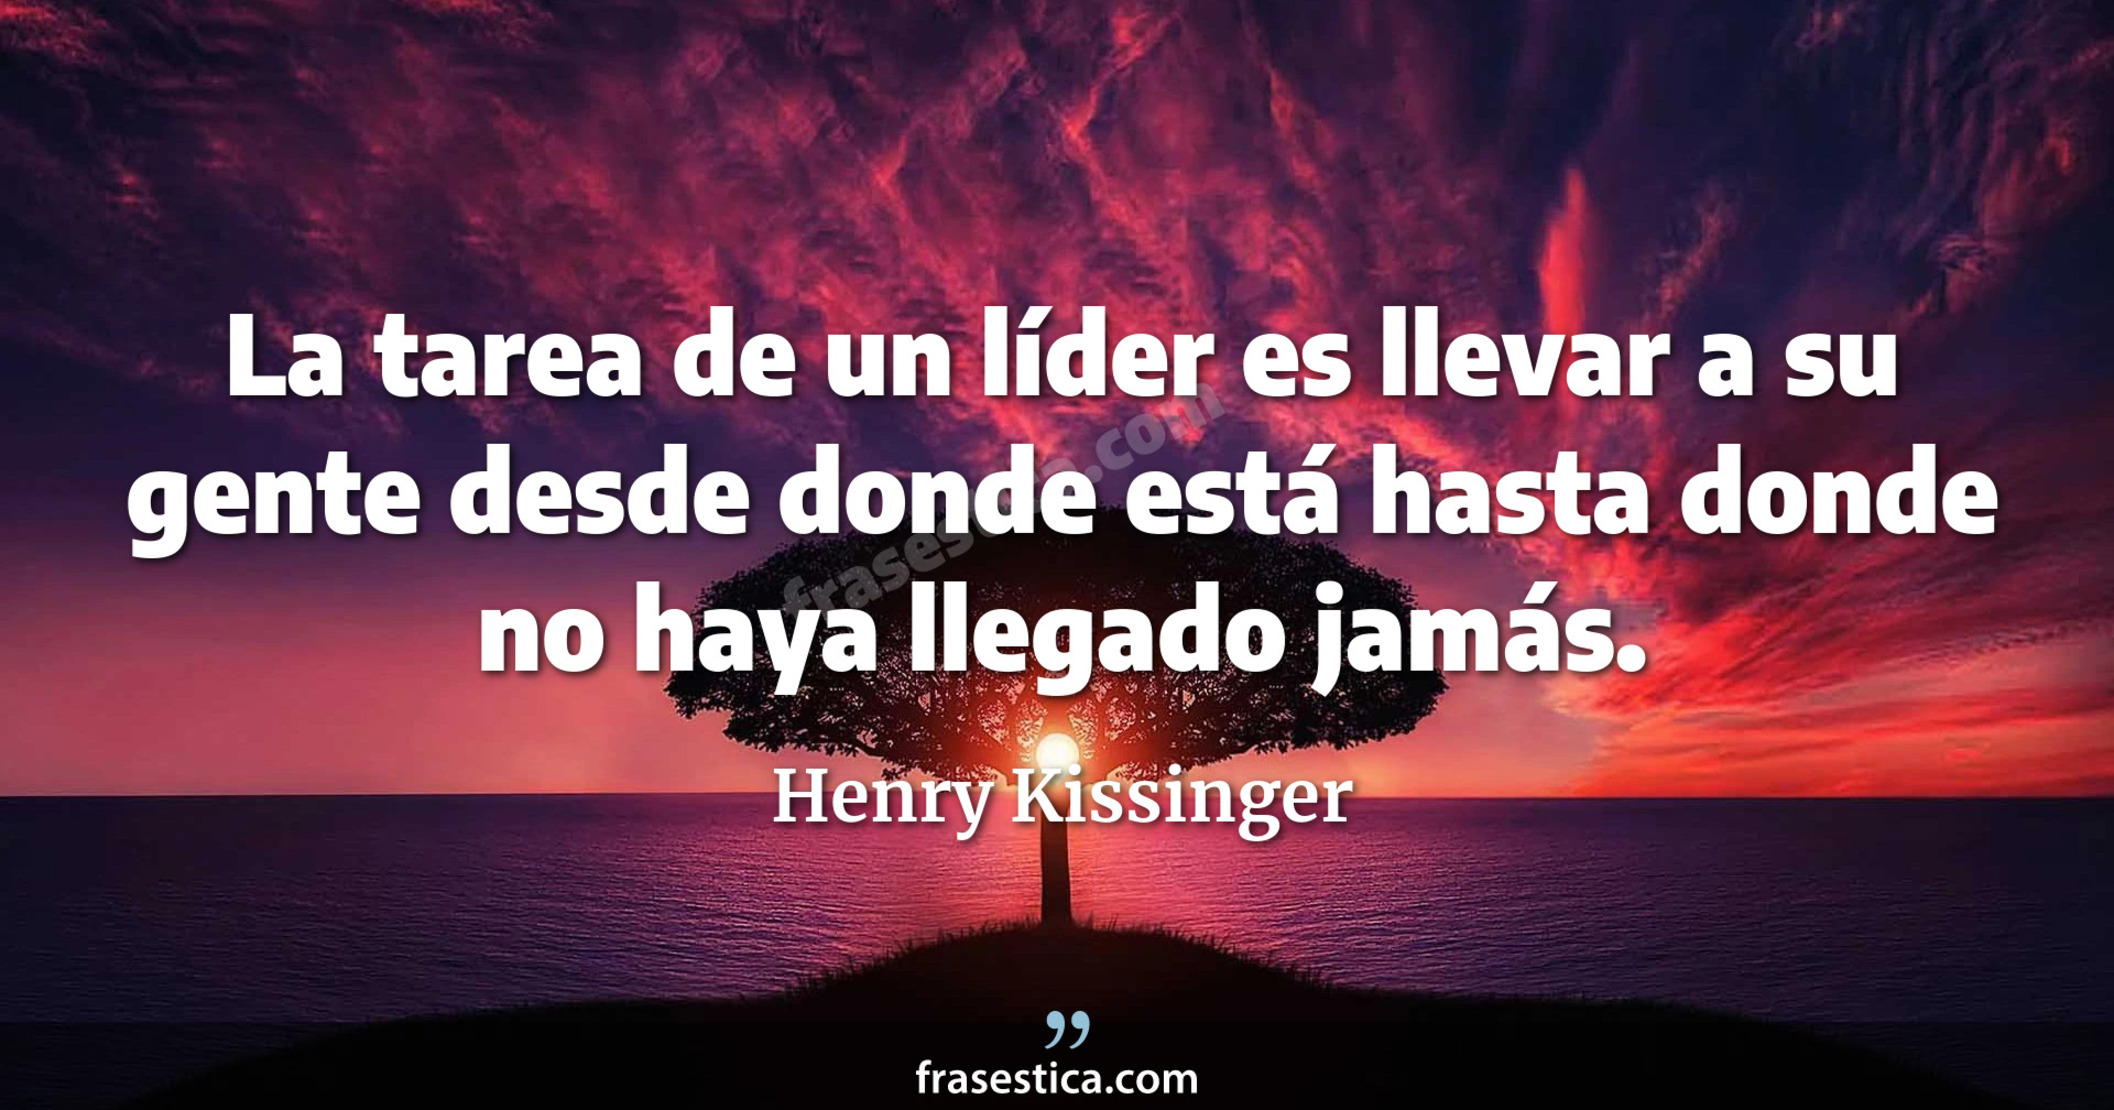 La tarea de un líder es llevar a su gente desde donde está hasta donde no haya llegado jamás. - Henry Kissinger